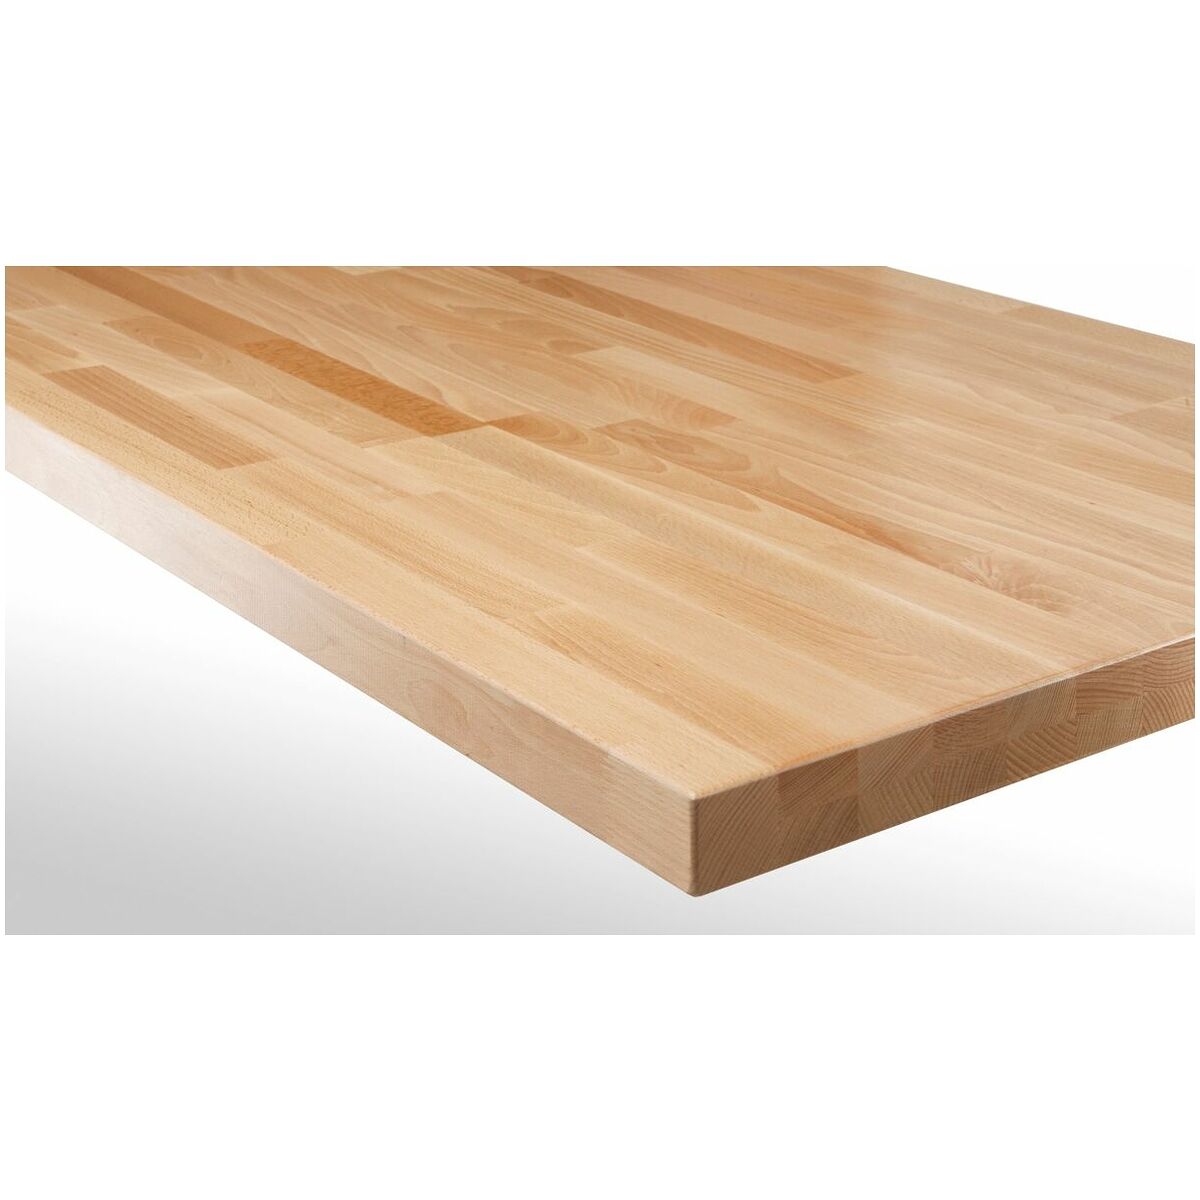 Simply buy Worktop of glued beech wood strips Depth 700 mm | Hoffmann Group